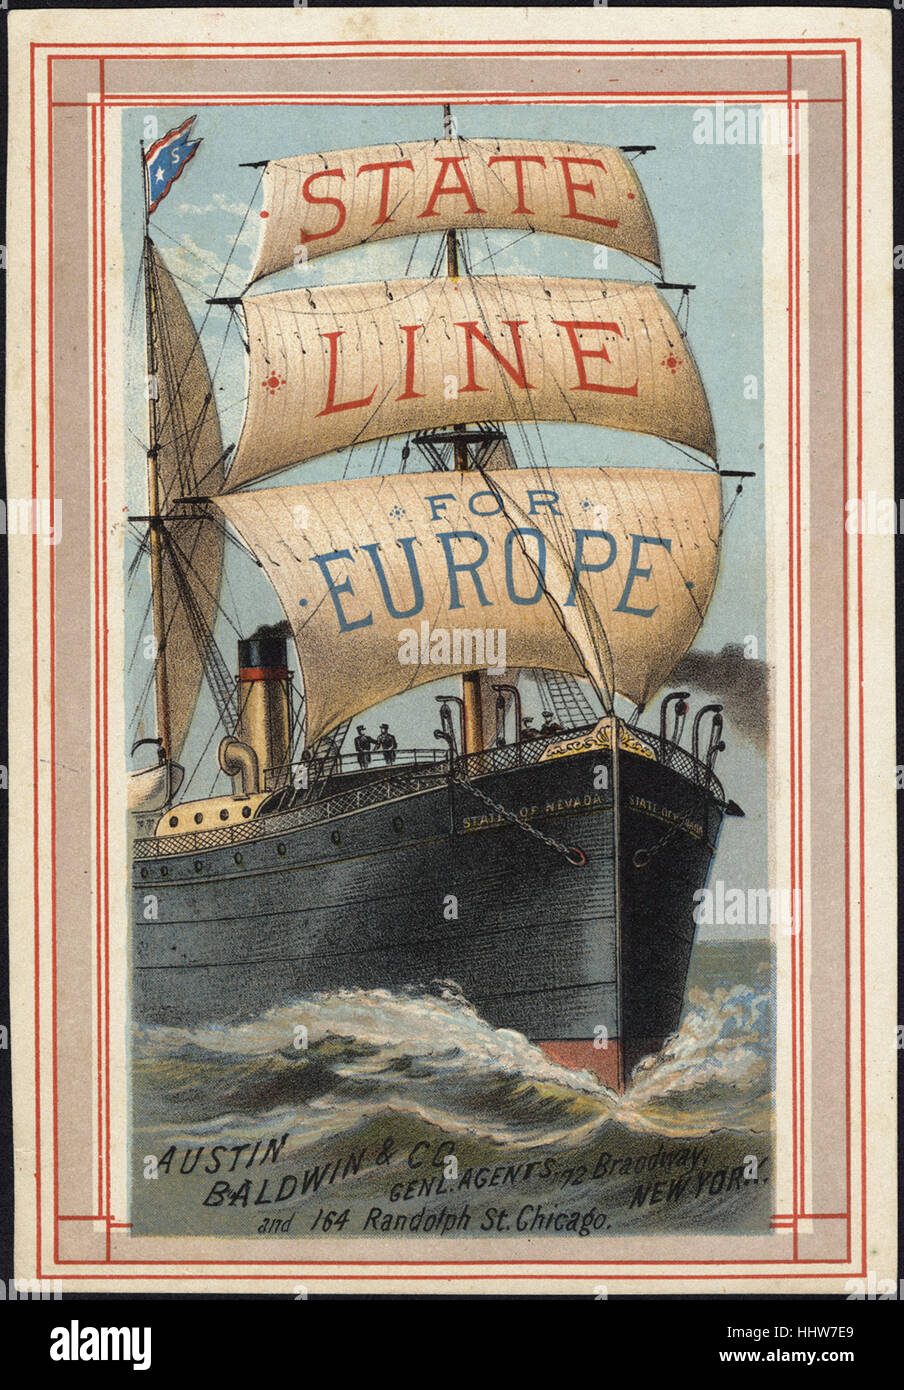 Staatliche Linie für Europa [Front] - Freizeit, Lesung und Travel Trade Cards Stockfoto